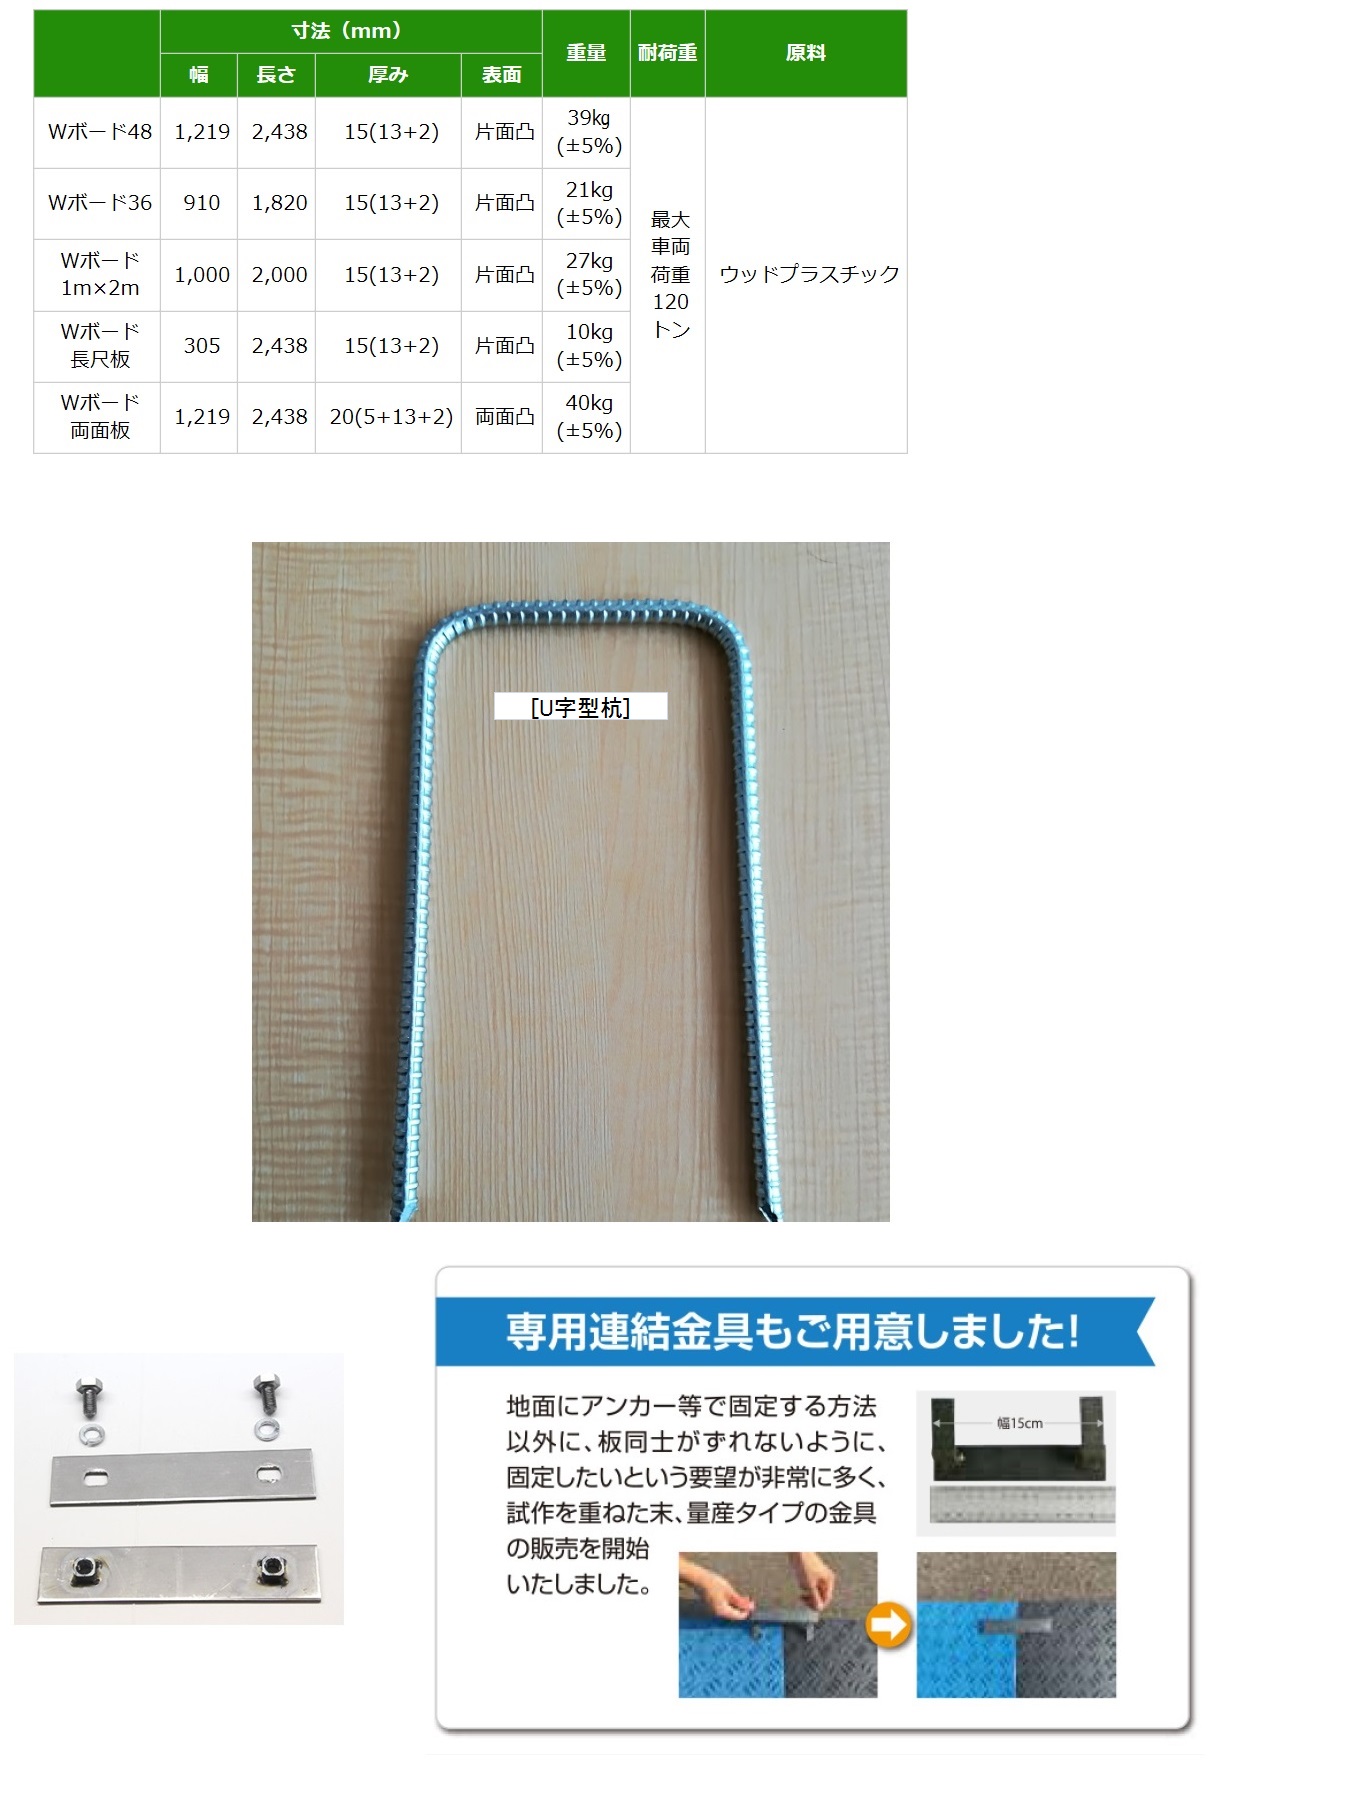 ウッドプラスチックテクノロジー 樹脂製養生敷板[Wボード] / 秋本勇吉商店 WEBショップ